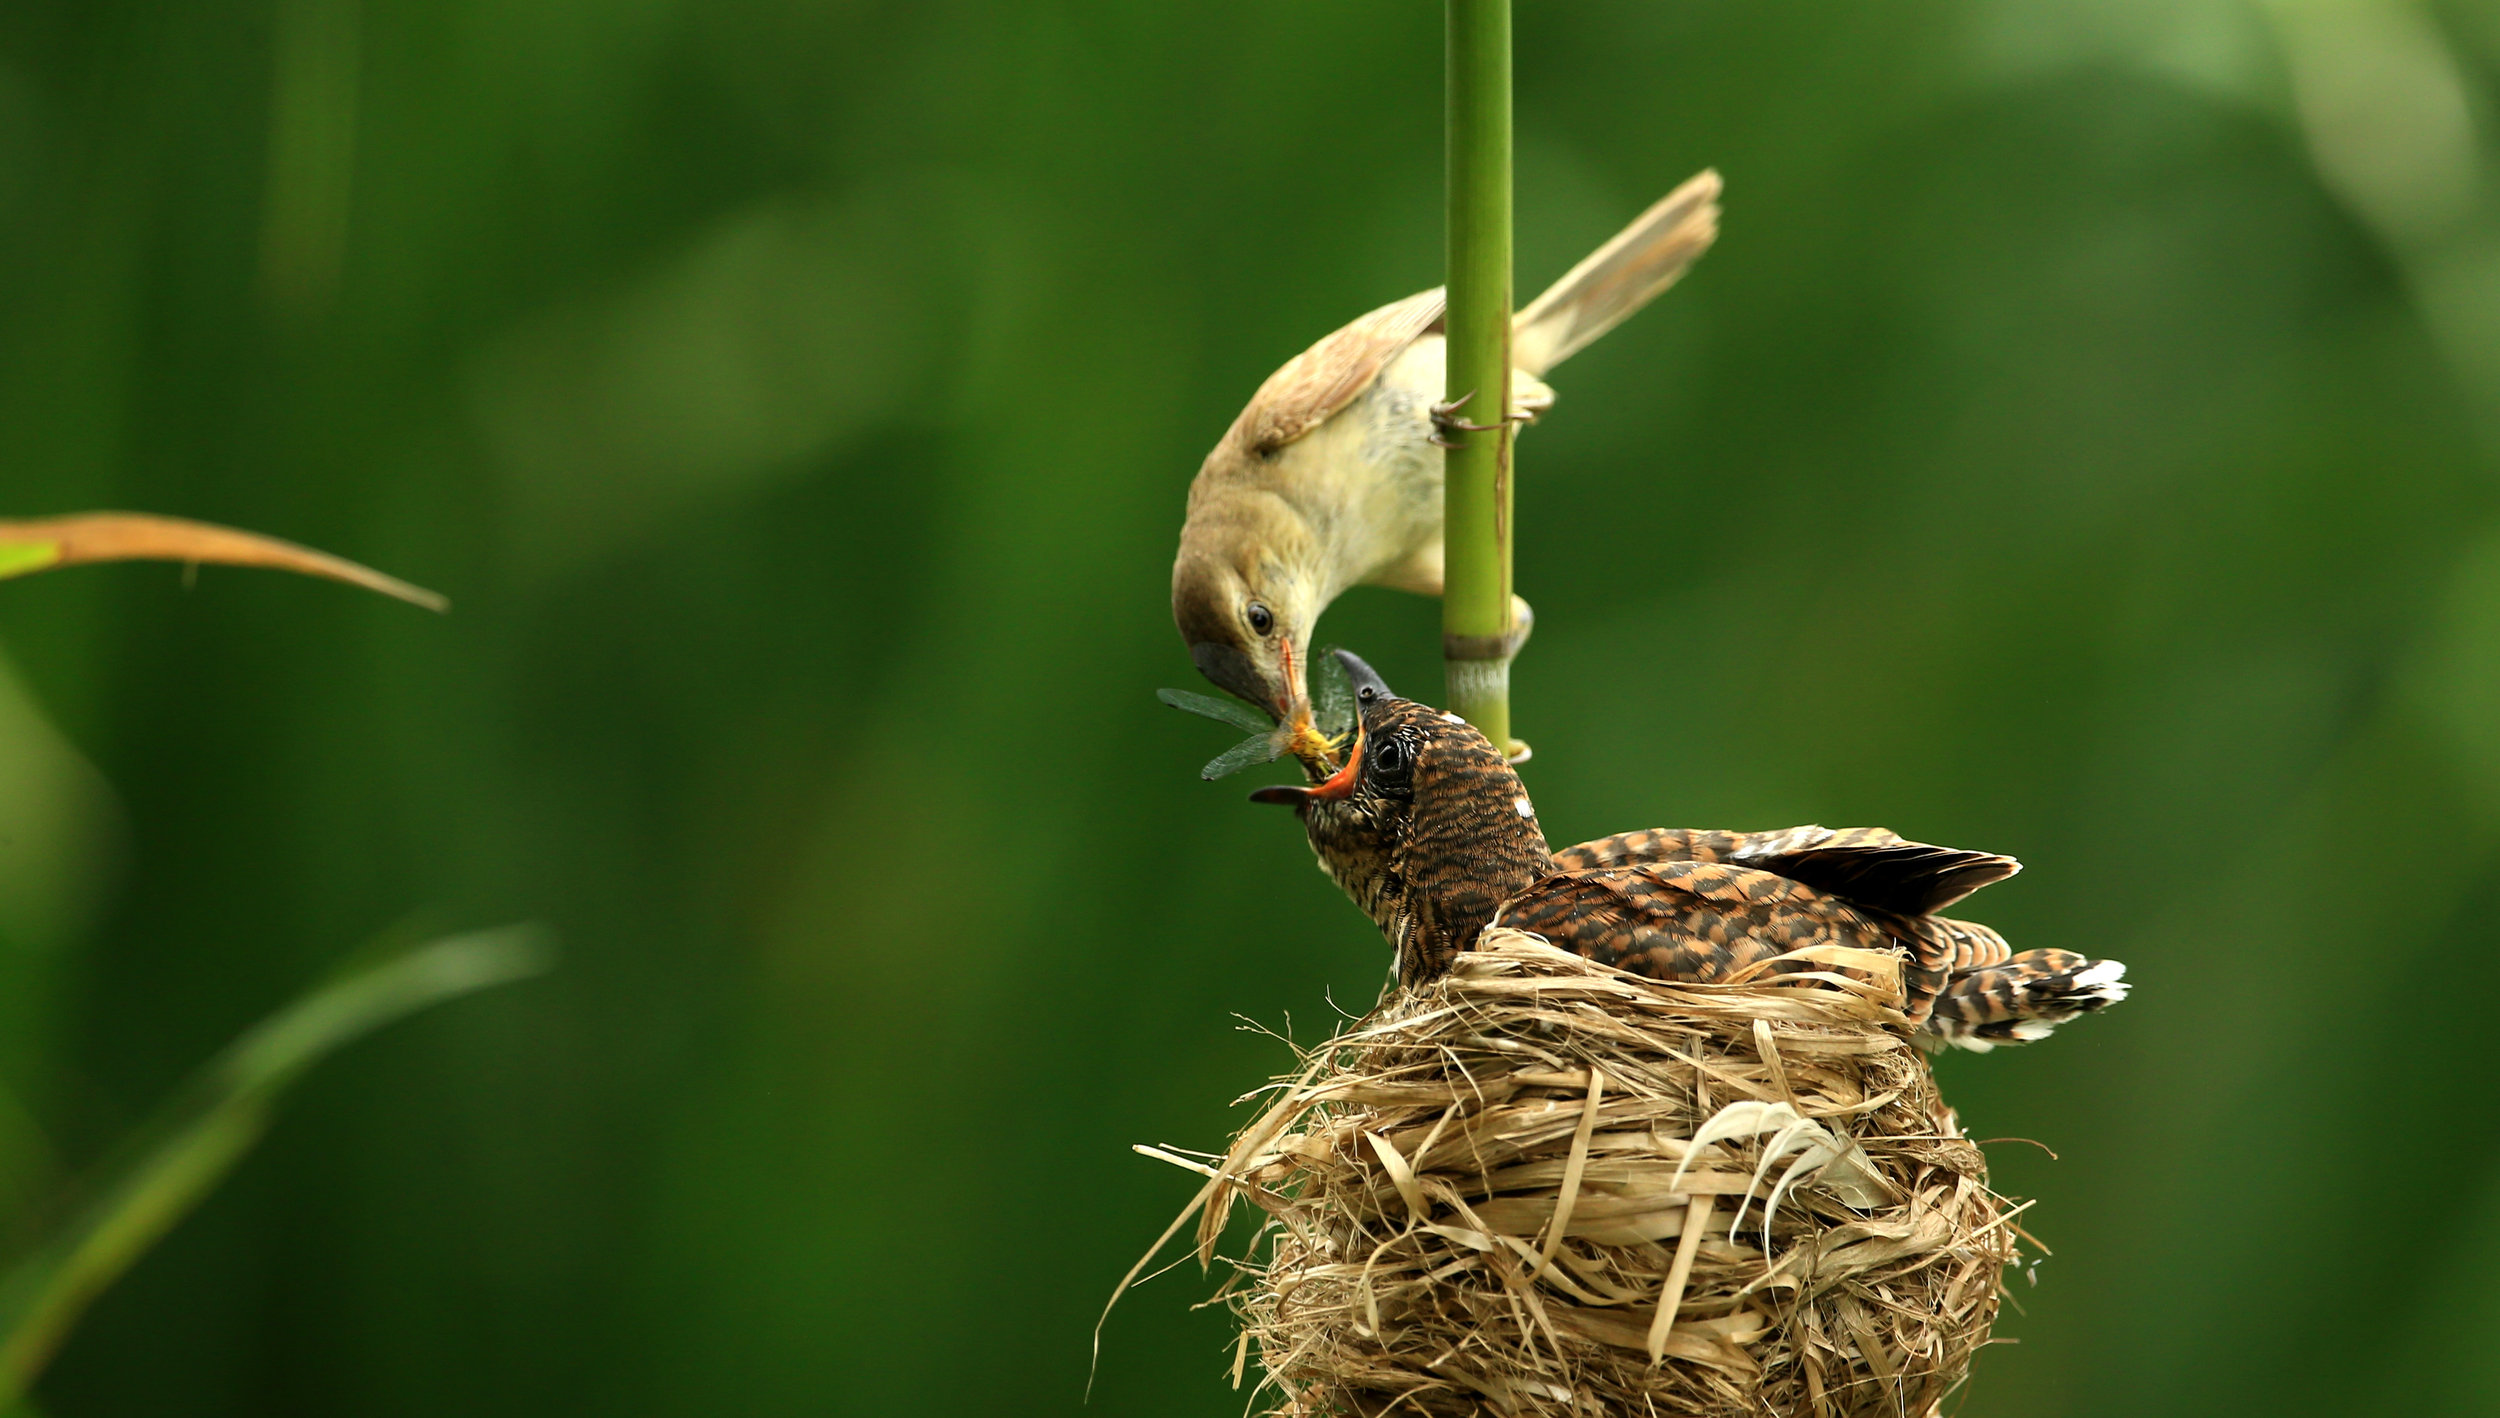 reed warbler:cuckoo.jpg